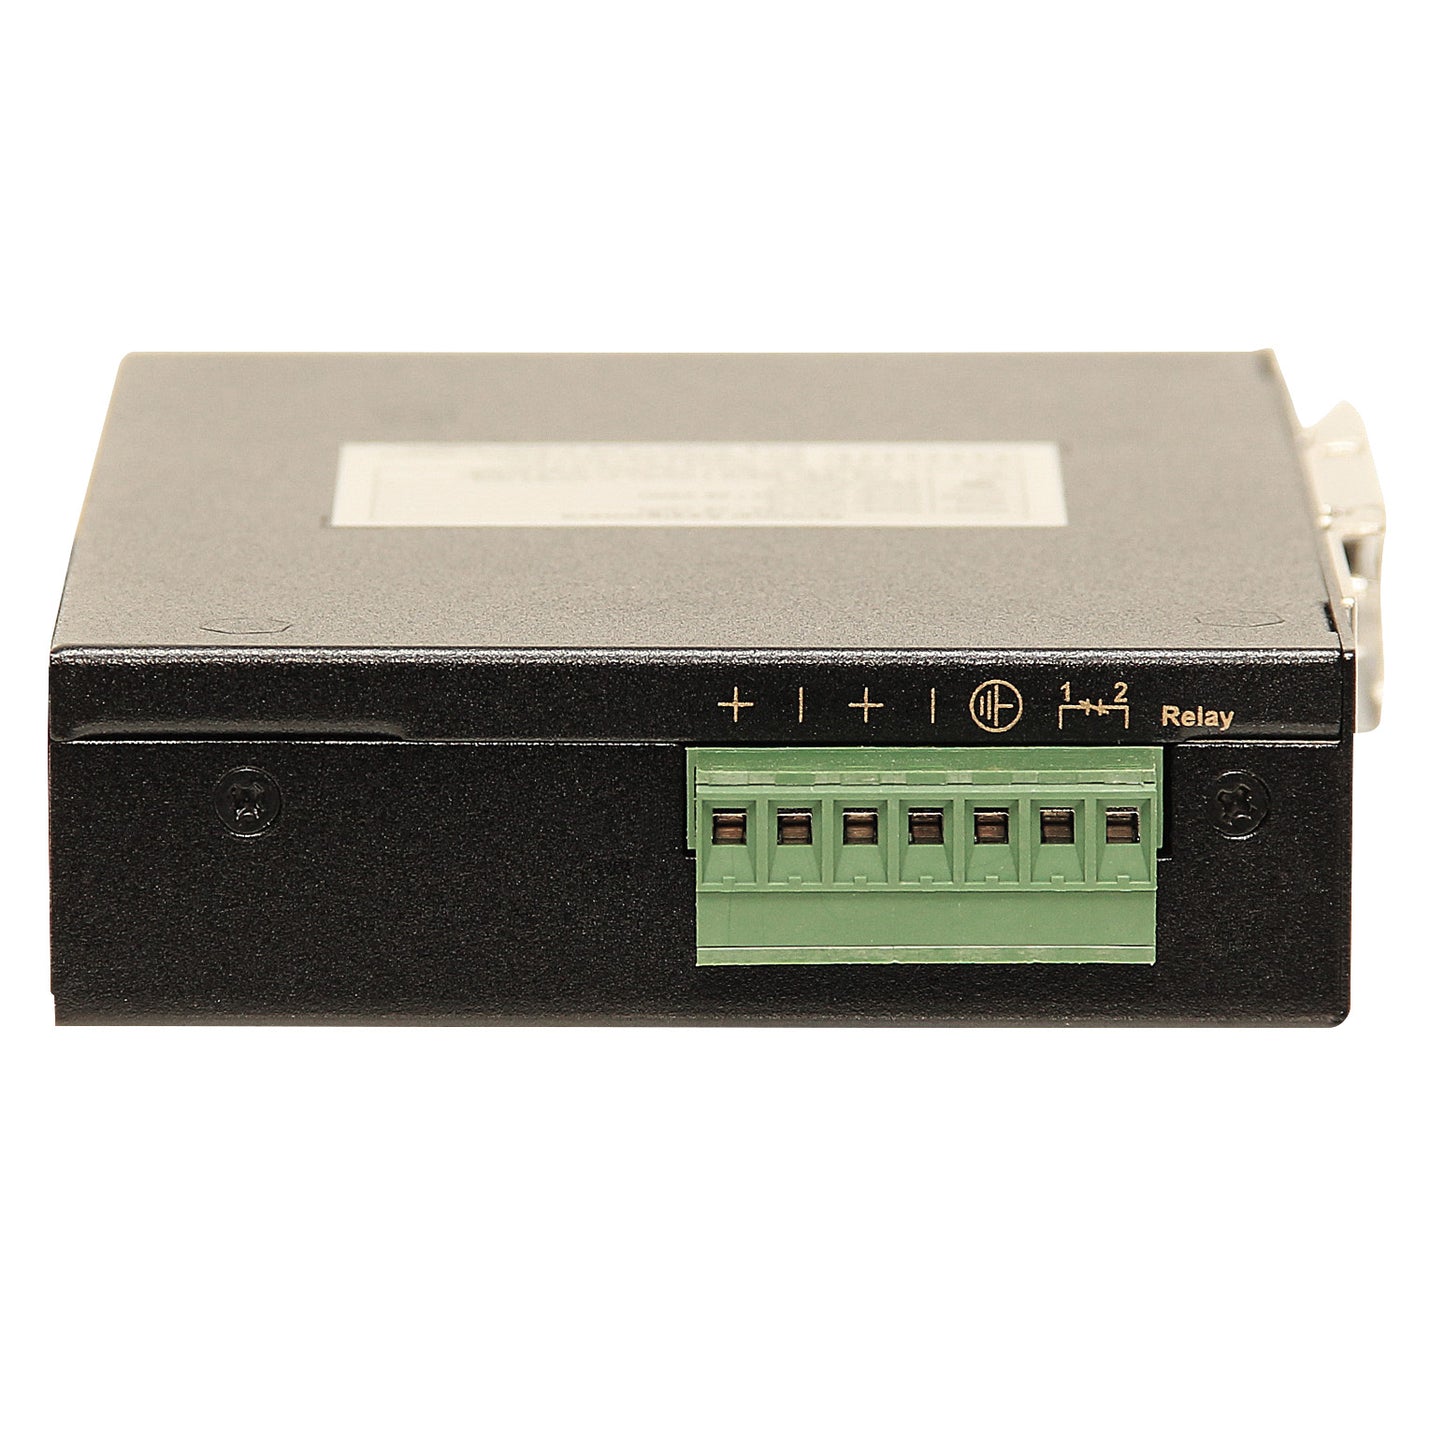 EX45905 - Hardened Unmanaged Gigabit Ethernet Switch 5-port 10/100/1000BASE-T (4 x PoE) Power Over Ethernet